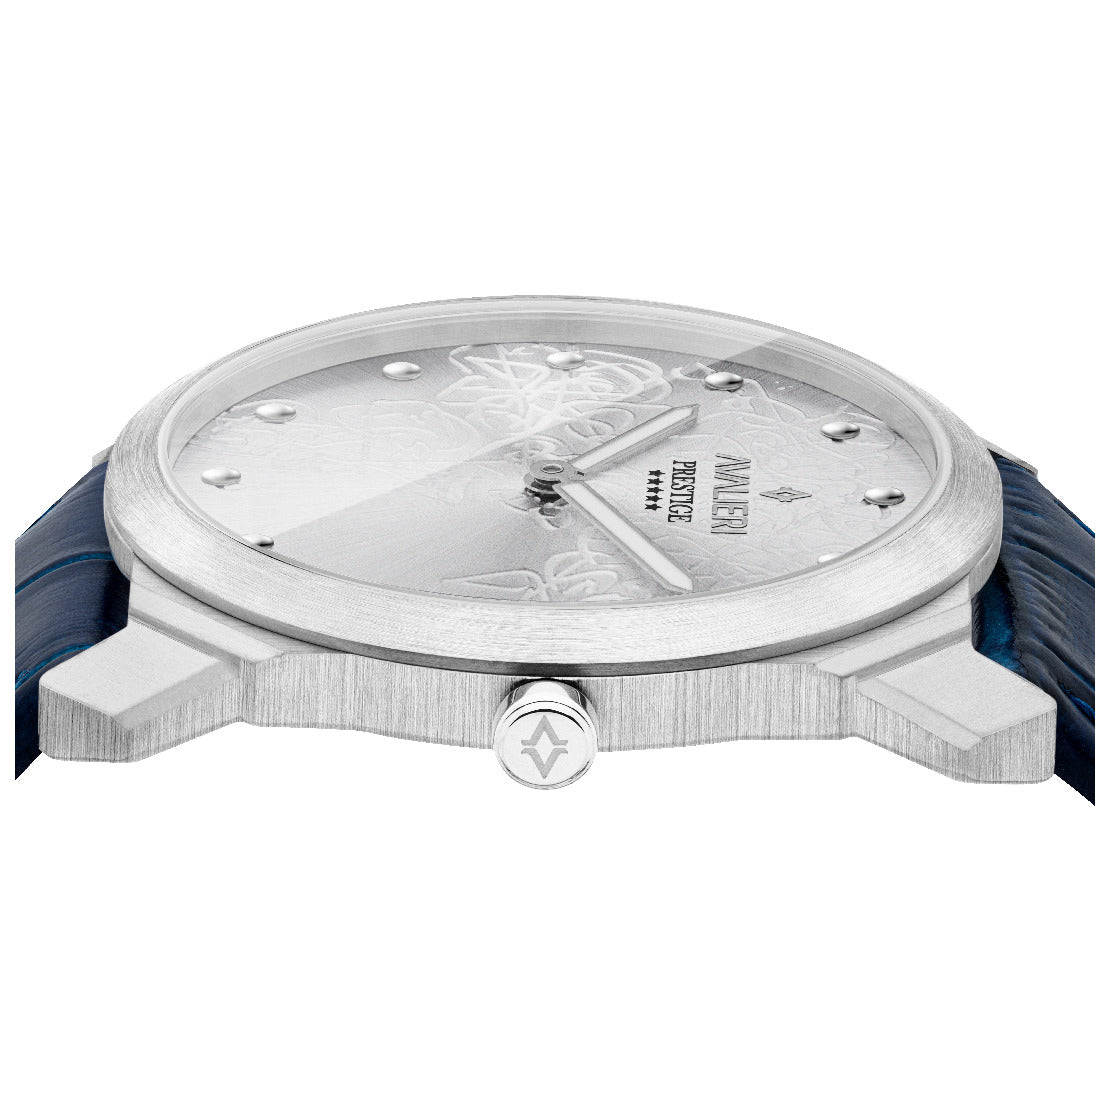 ساعة أفاليري برستيج الرجالية بحركة كوارتز السويسرية ولون مينا أبيض فضي - AP-0095